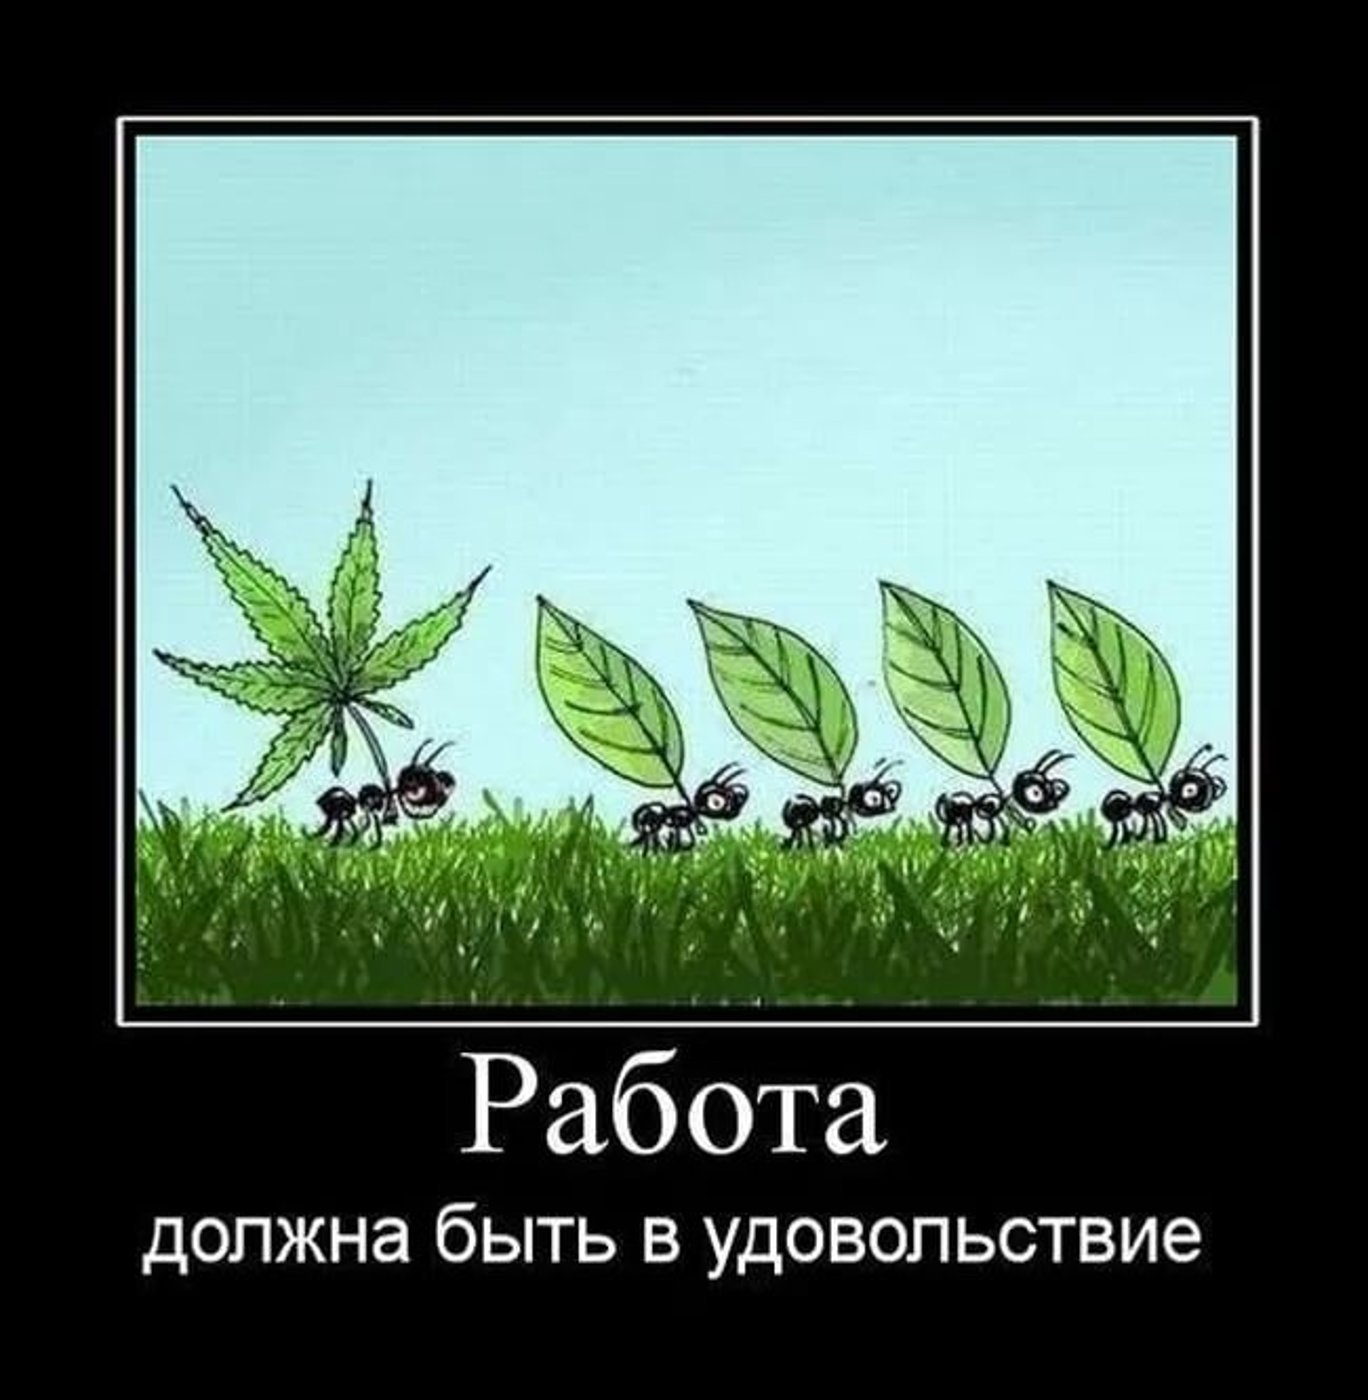 Прикольные фото про марихуану закон казахстана о конопле